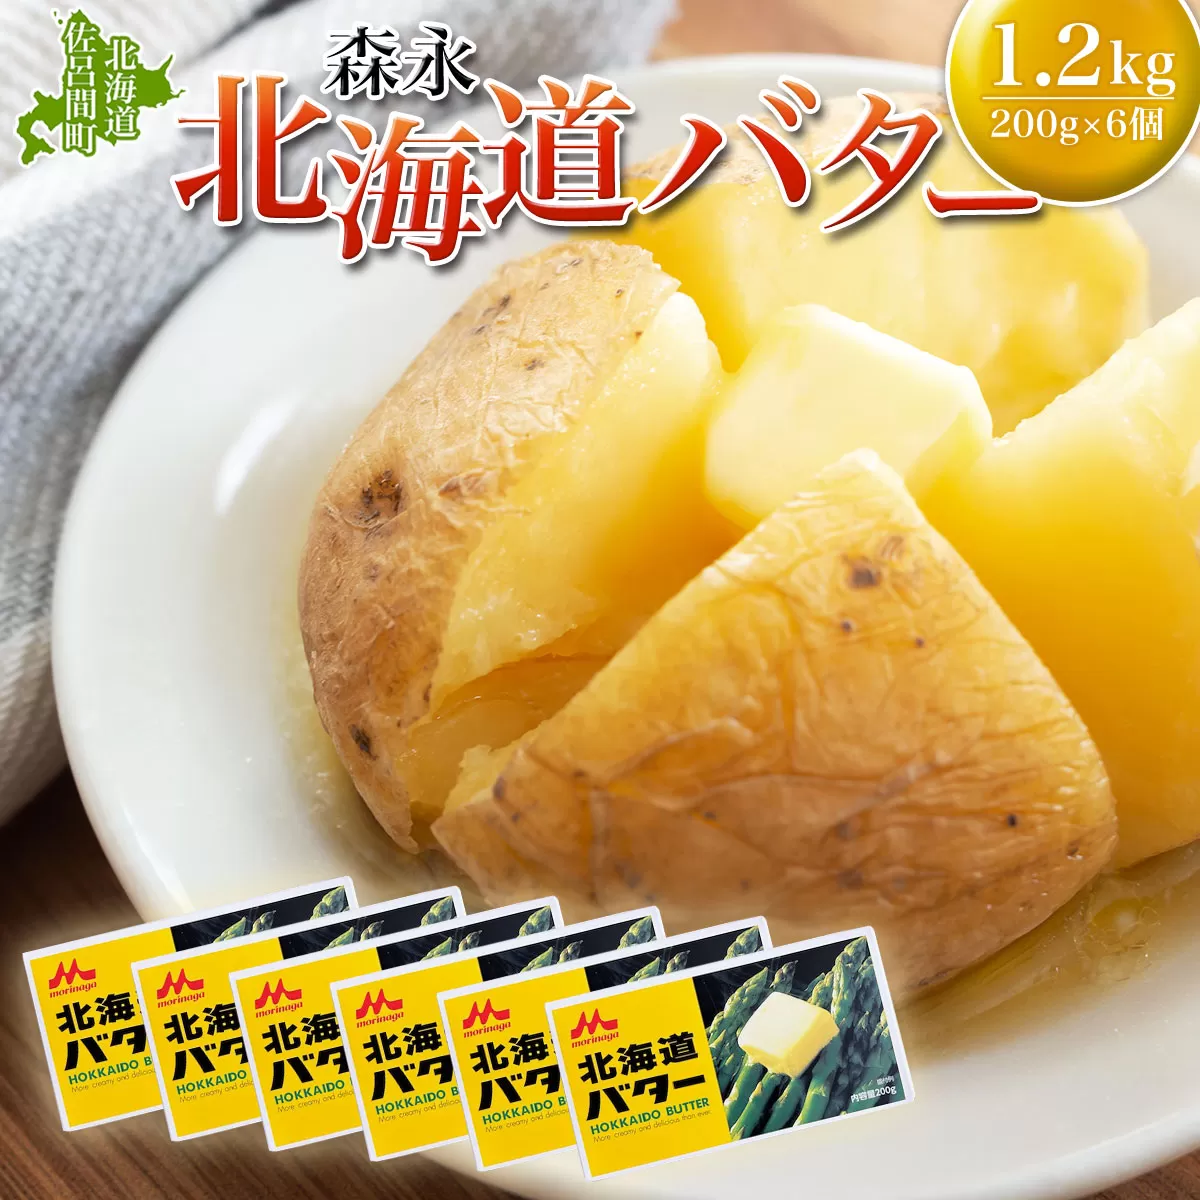 森永 北海道 バター 1.2kg（200g×6個） SRMM014